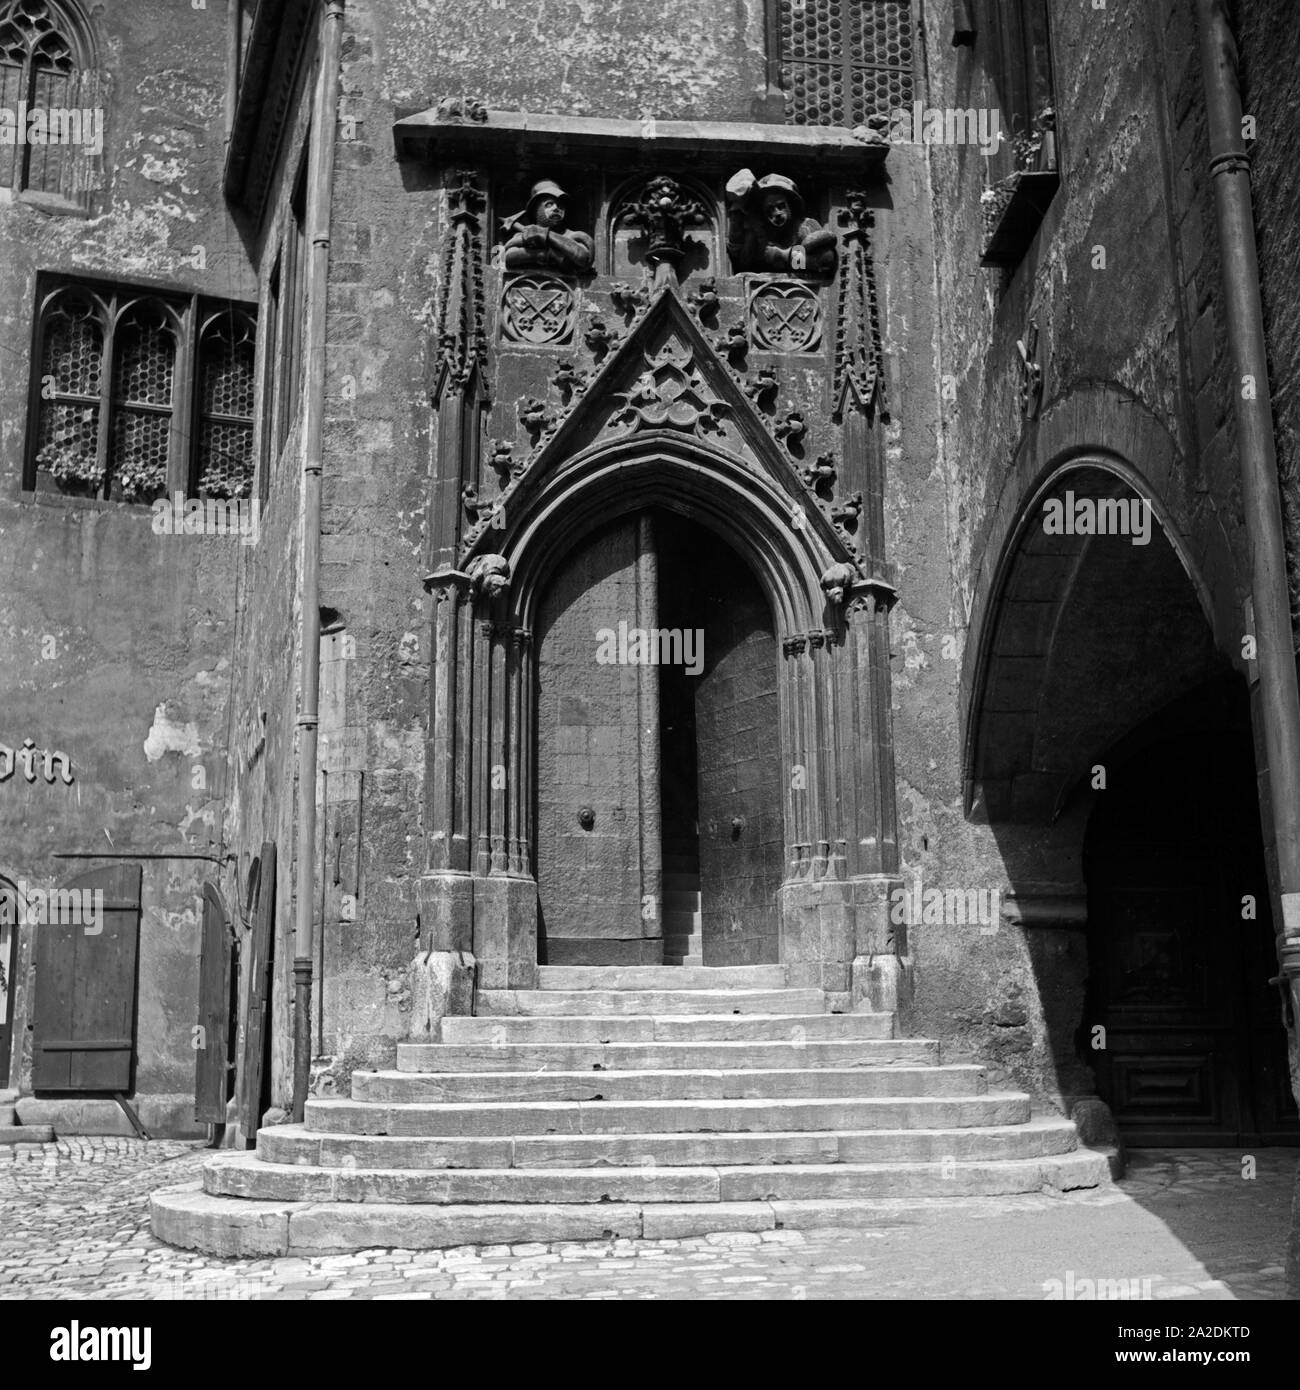 Portal am Rathaus in Regensburg, Deutschland 1930er Jahre. Ingresso alla Regensburg City Hall, Germania 1930s. Foto Stock